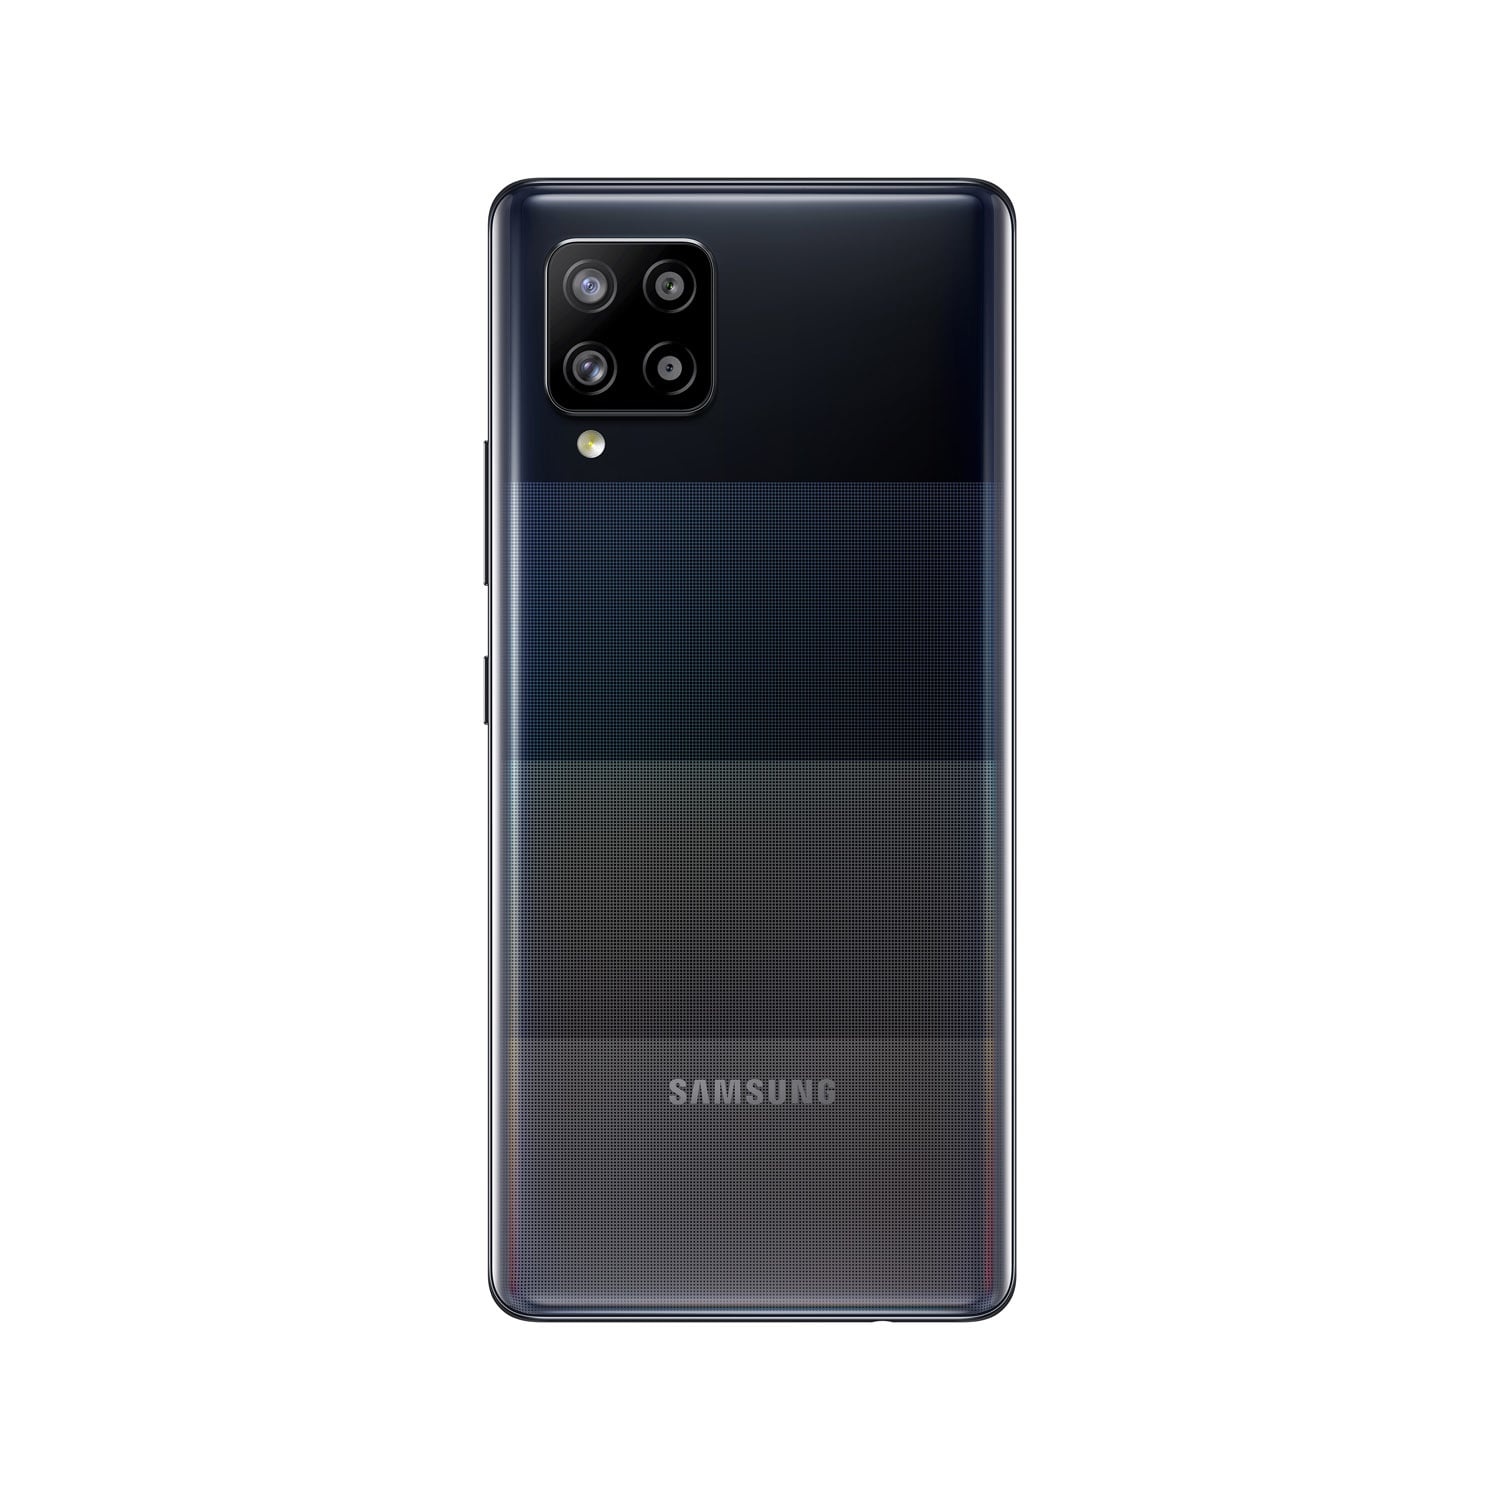 گوشی موبایل سامسونگ Galaxy A42 5G دو سیم کارت با ظرفیت 128 گیگابایت و 18 ماه گارانتی